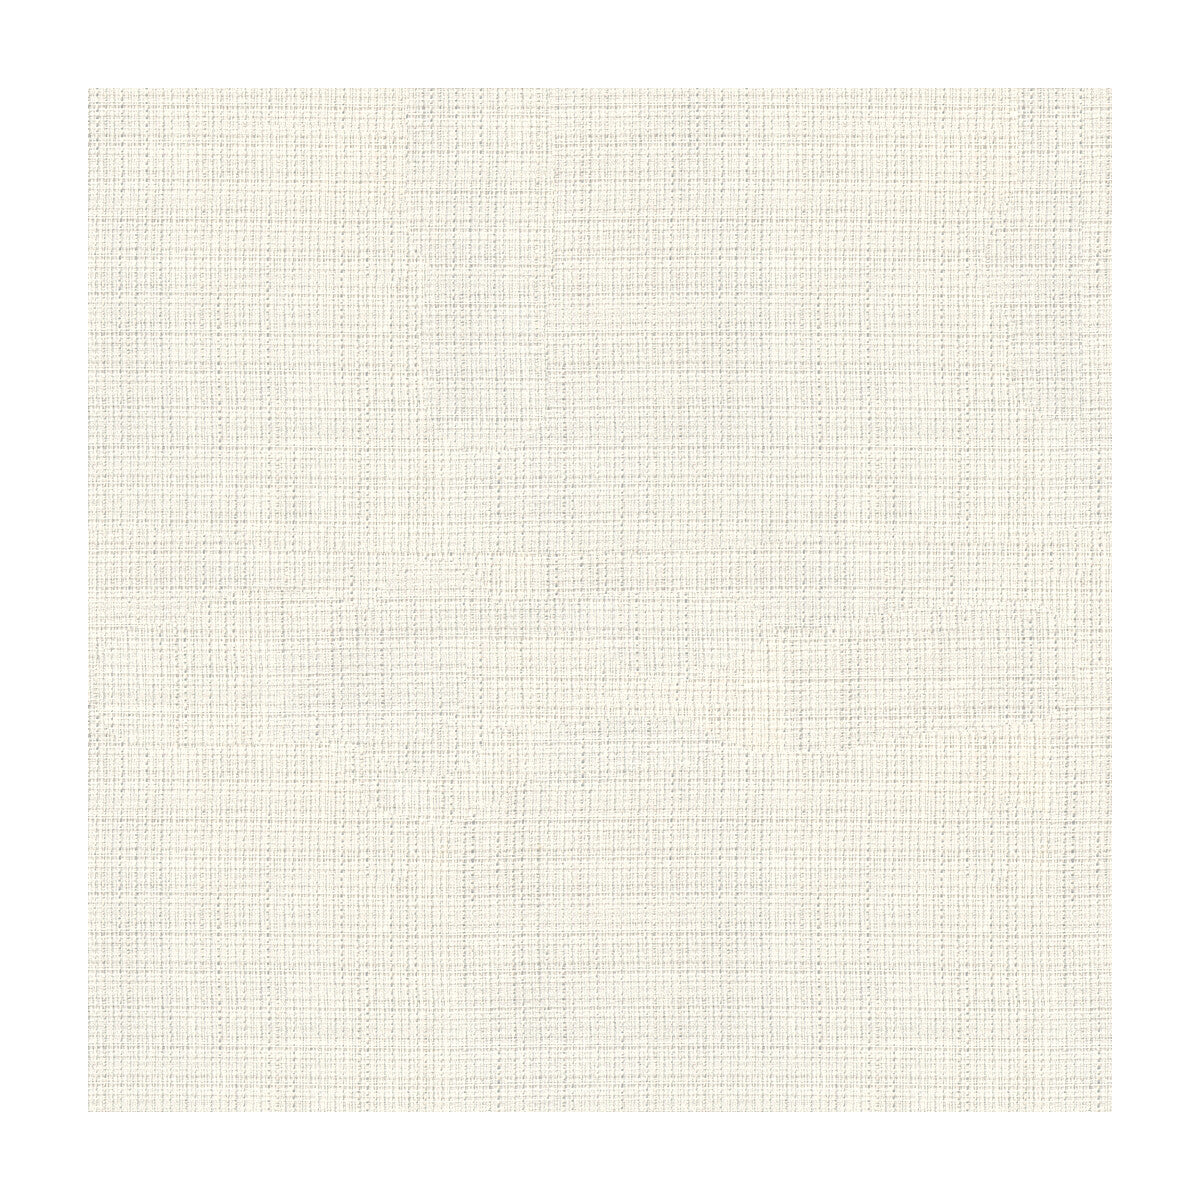 Kravet Basics fabric in 4106-101 color - pattern 4106.101.0 - by Kravet Basics